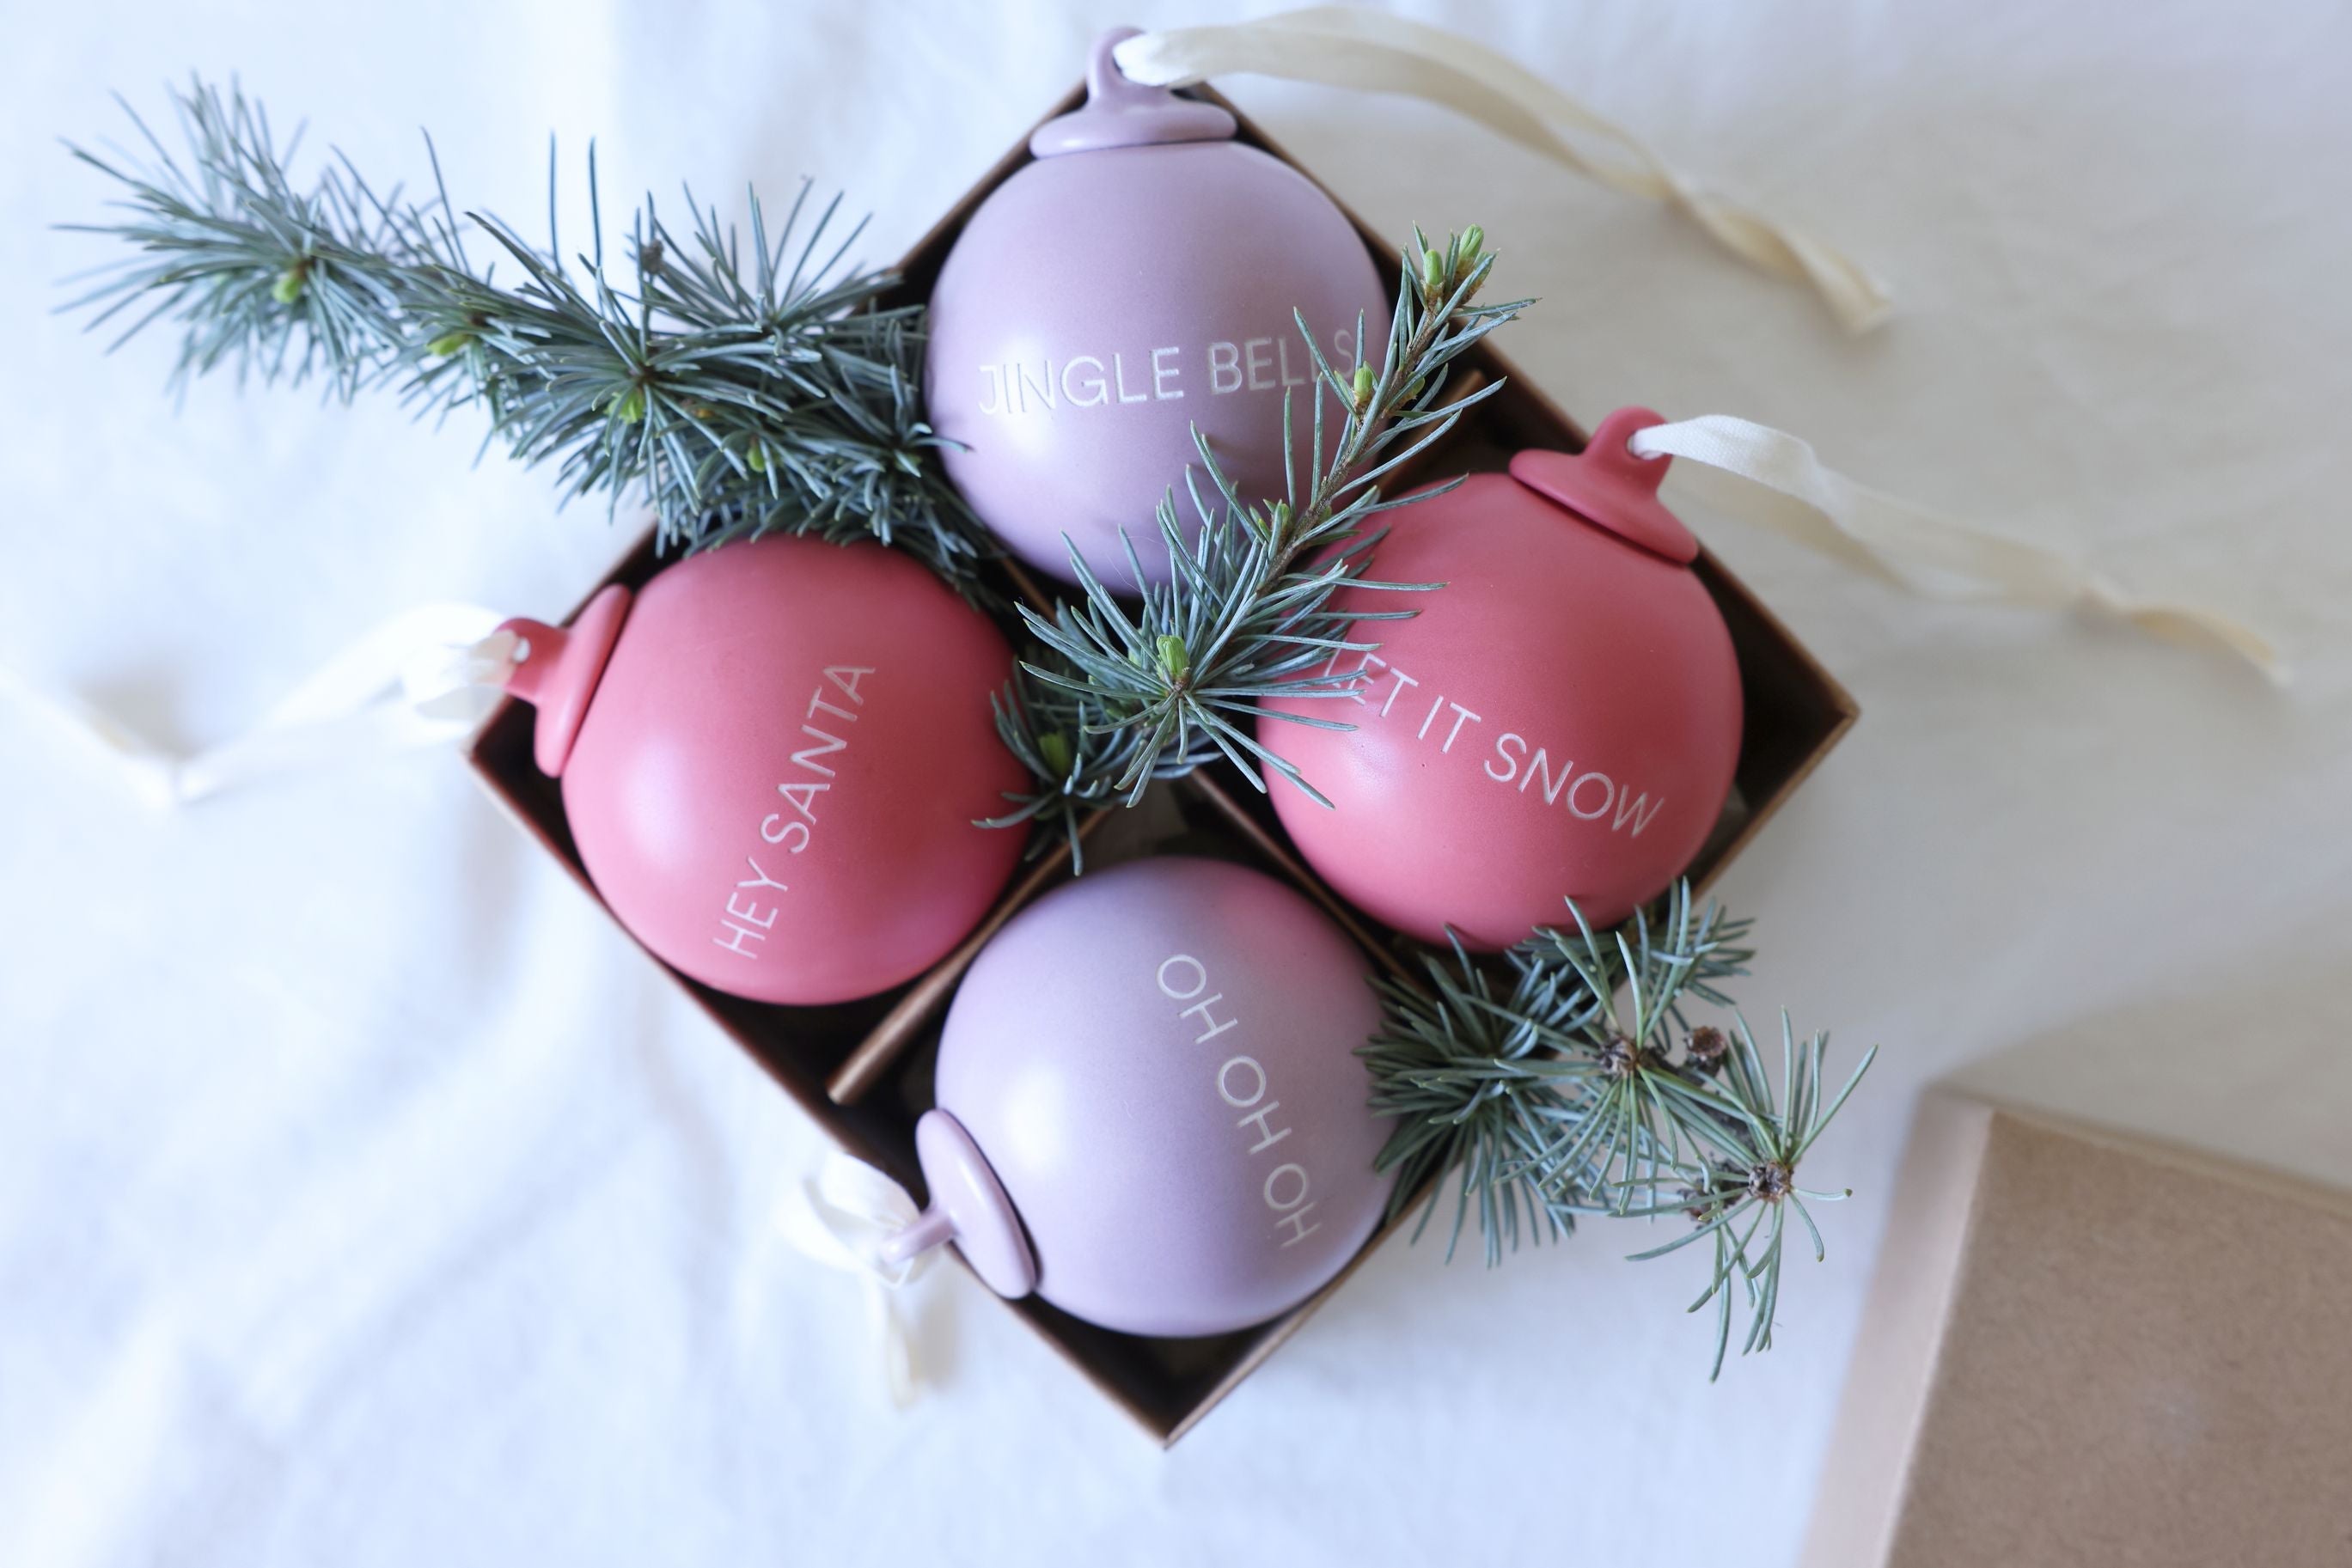 Letras de diseño historias de Navidad colgantes de pelota 60 mm (conjunto de 4 pcs), lavanda/rosa desvaída